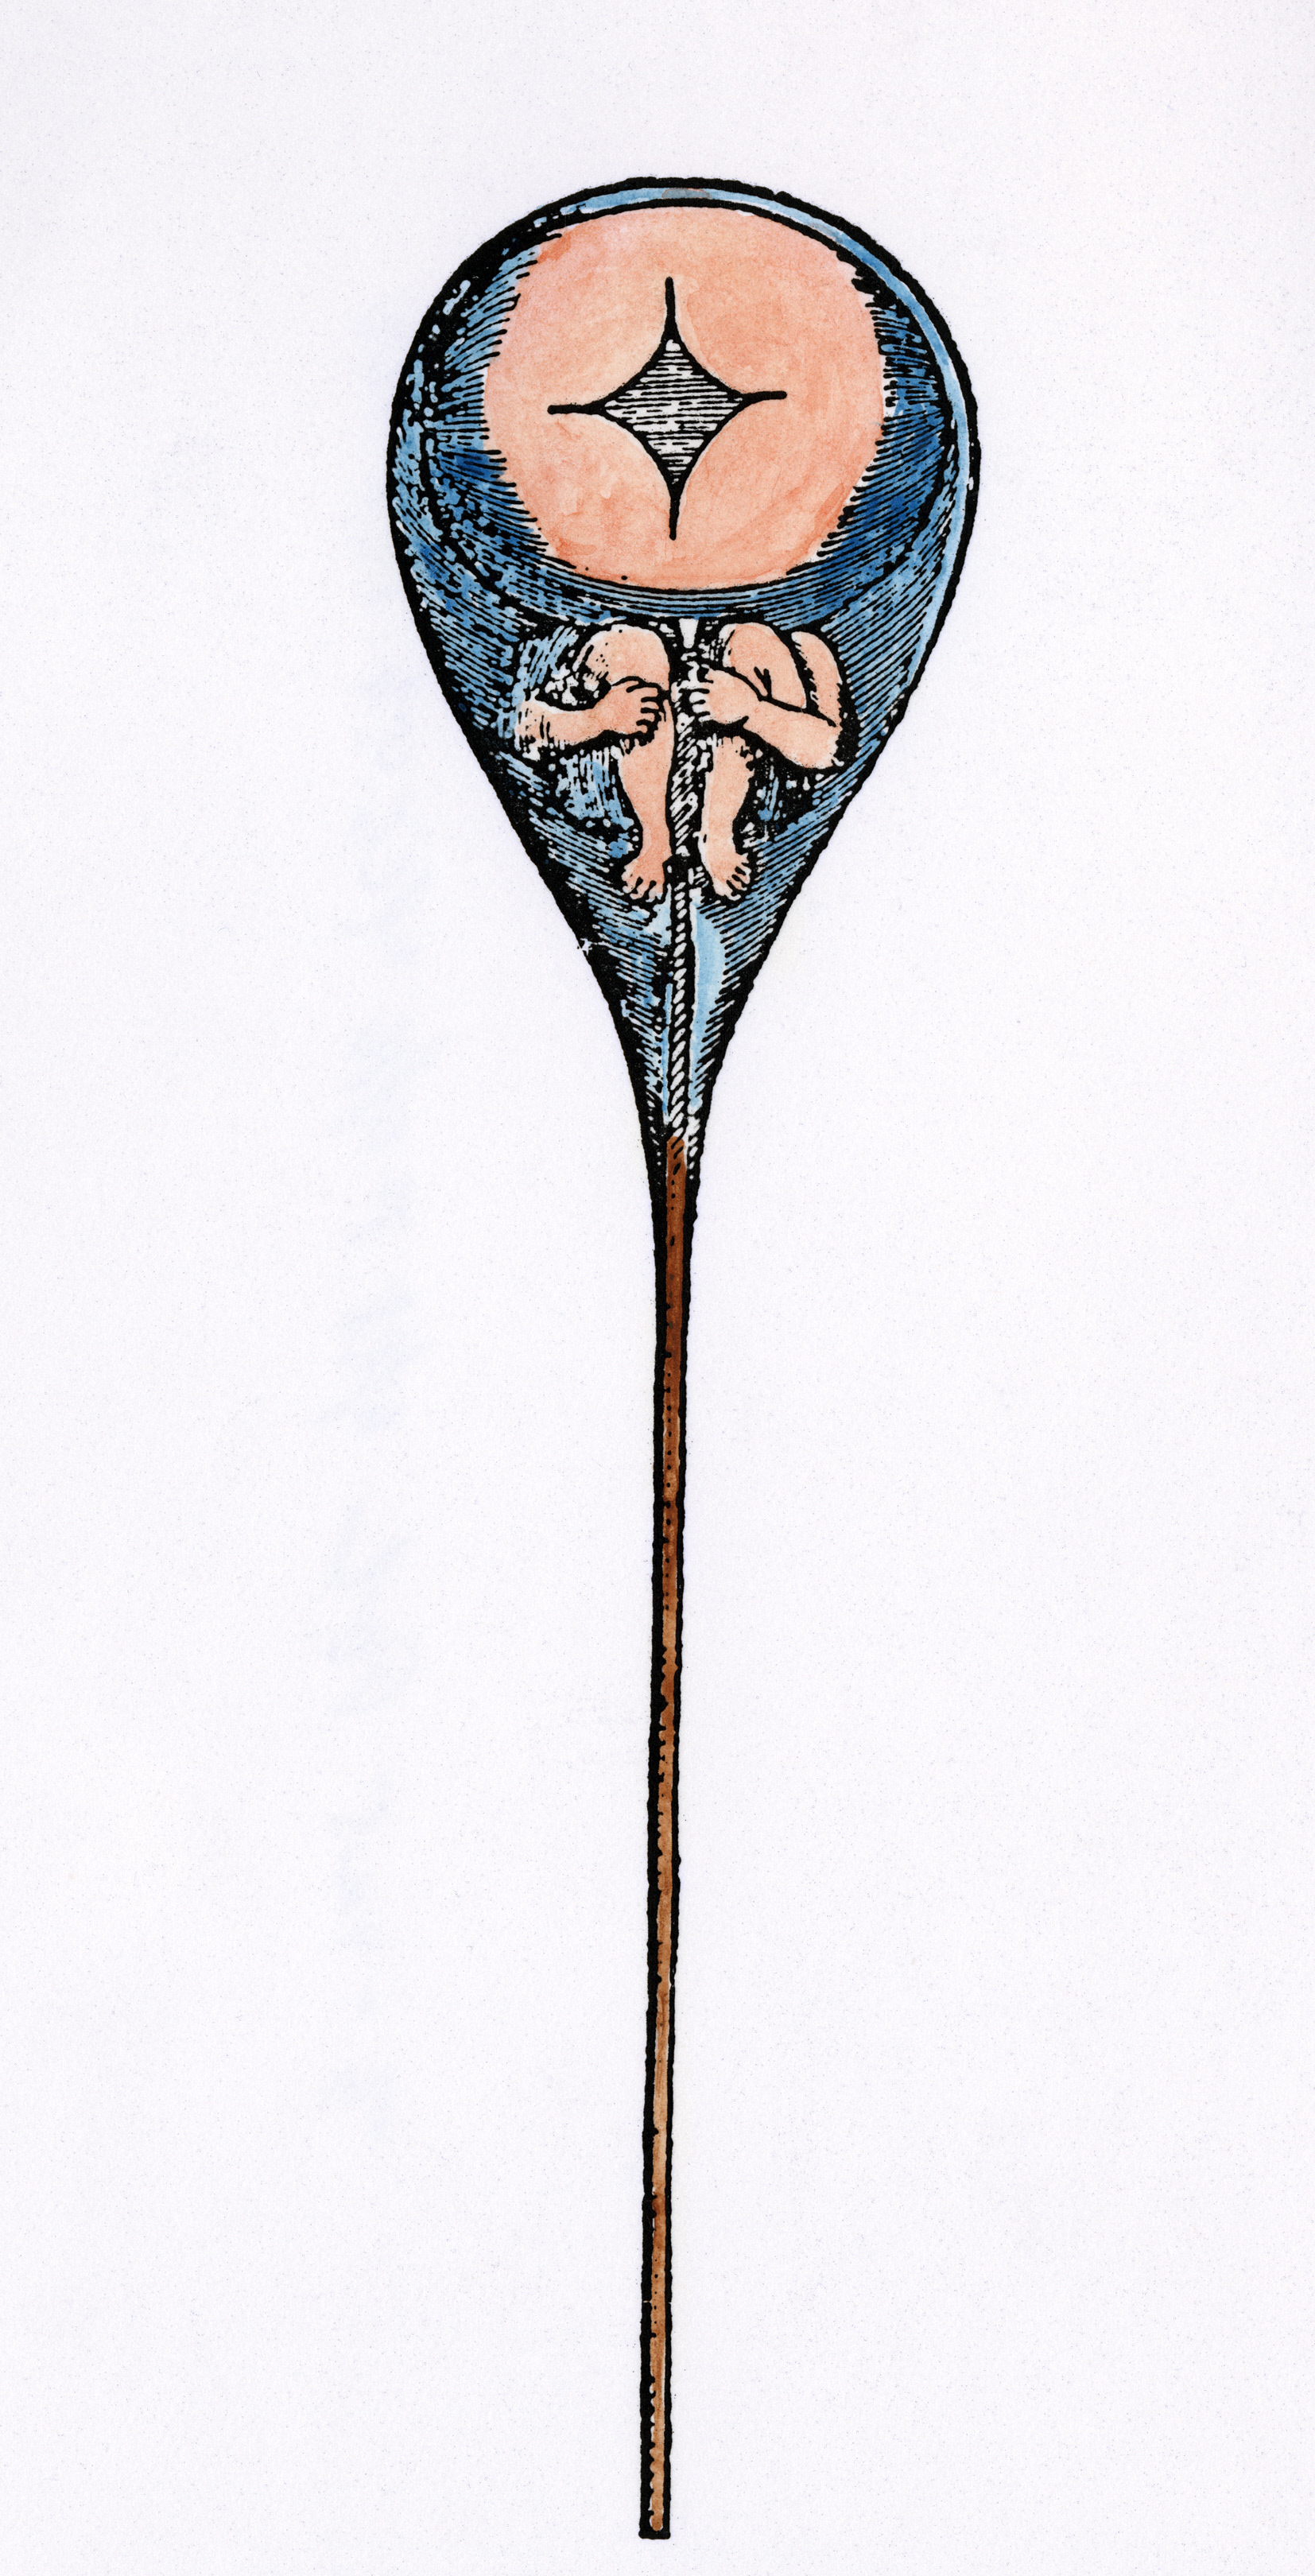 A homunculus inside human sperm, from Niklass Hartsoeker’s ‘Essay de Dioptrique’, 17th century. Granger/Bridgeman Images.